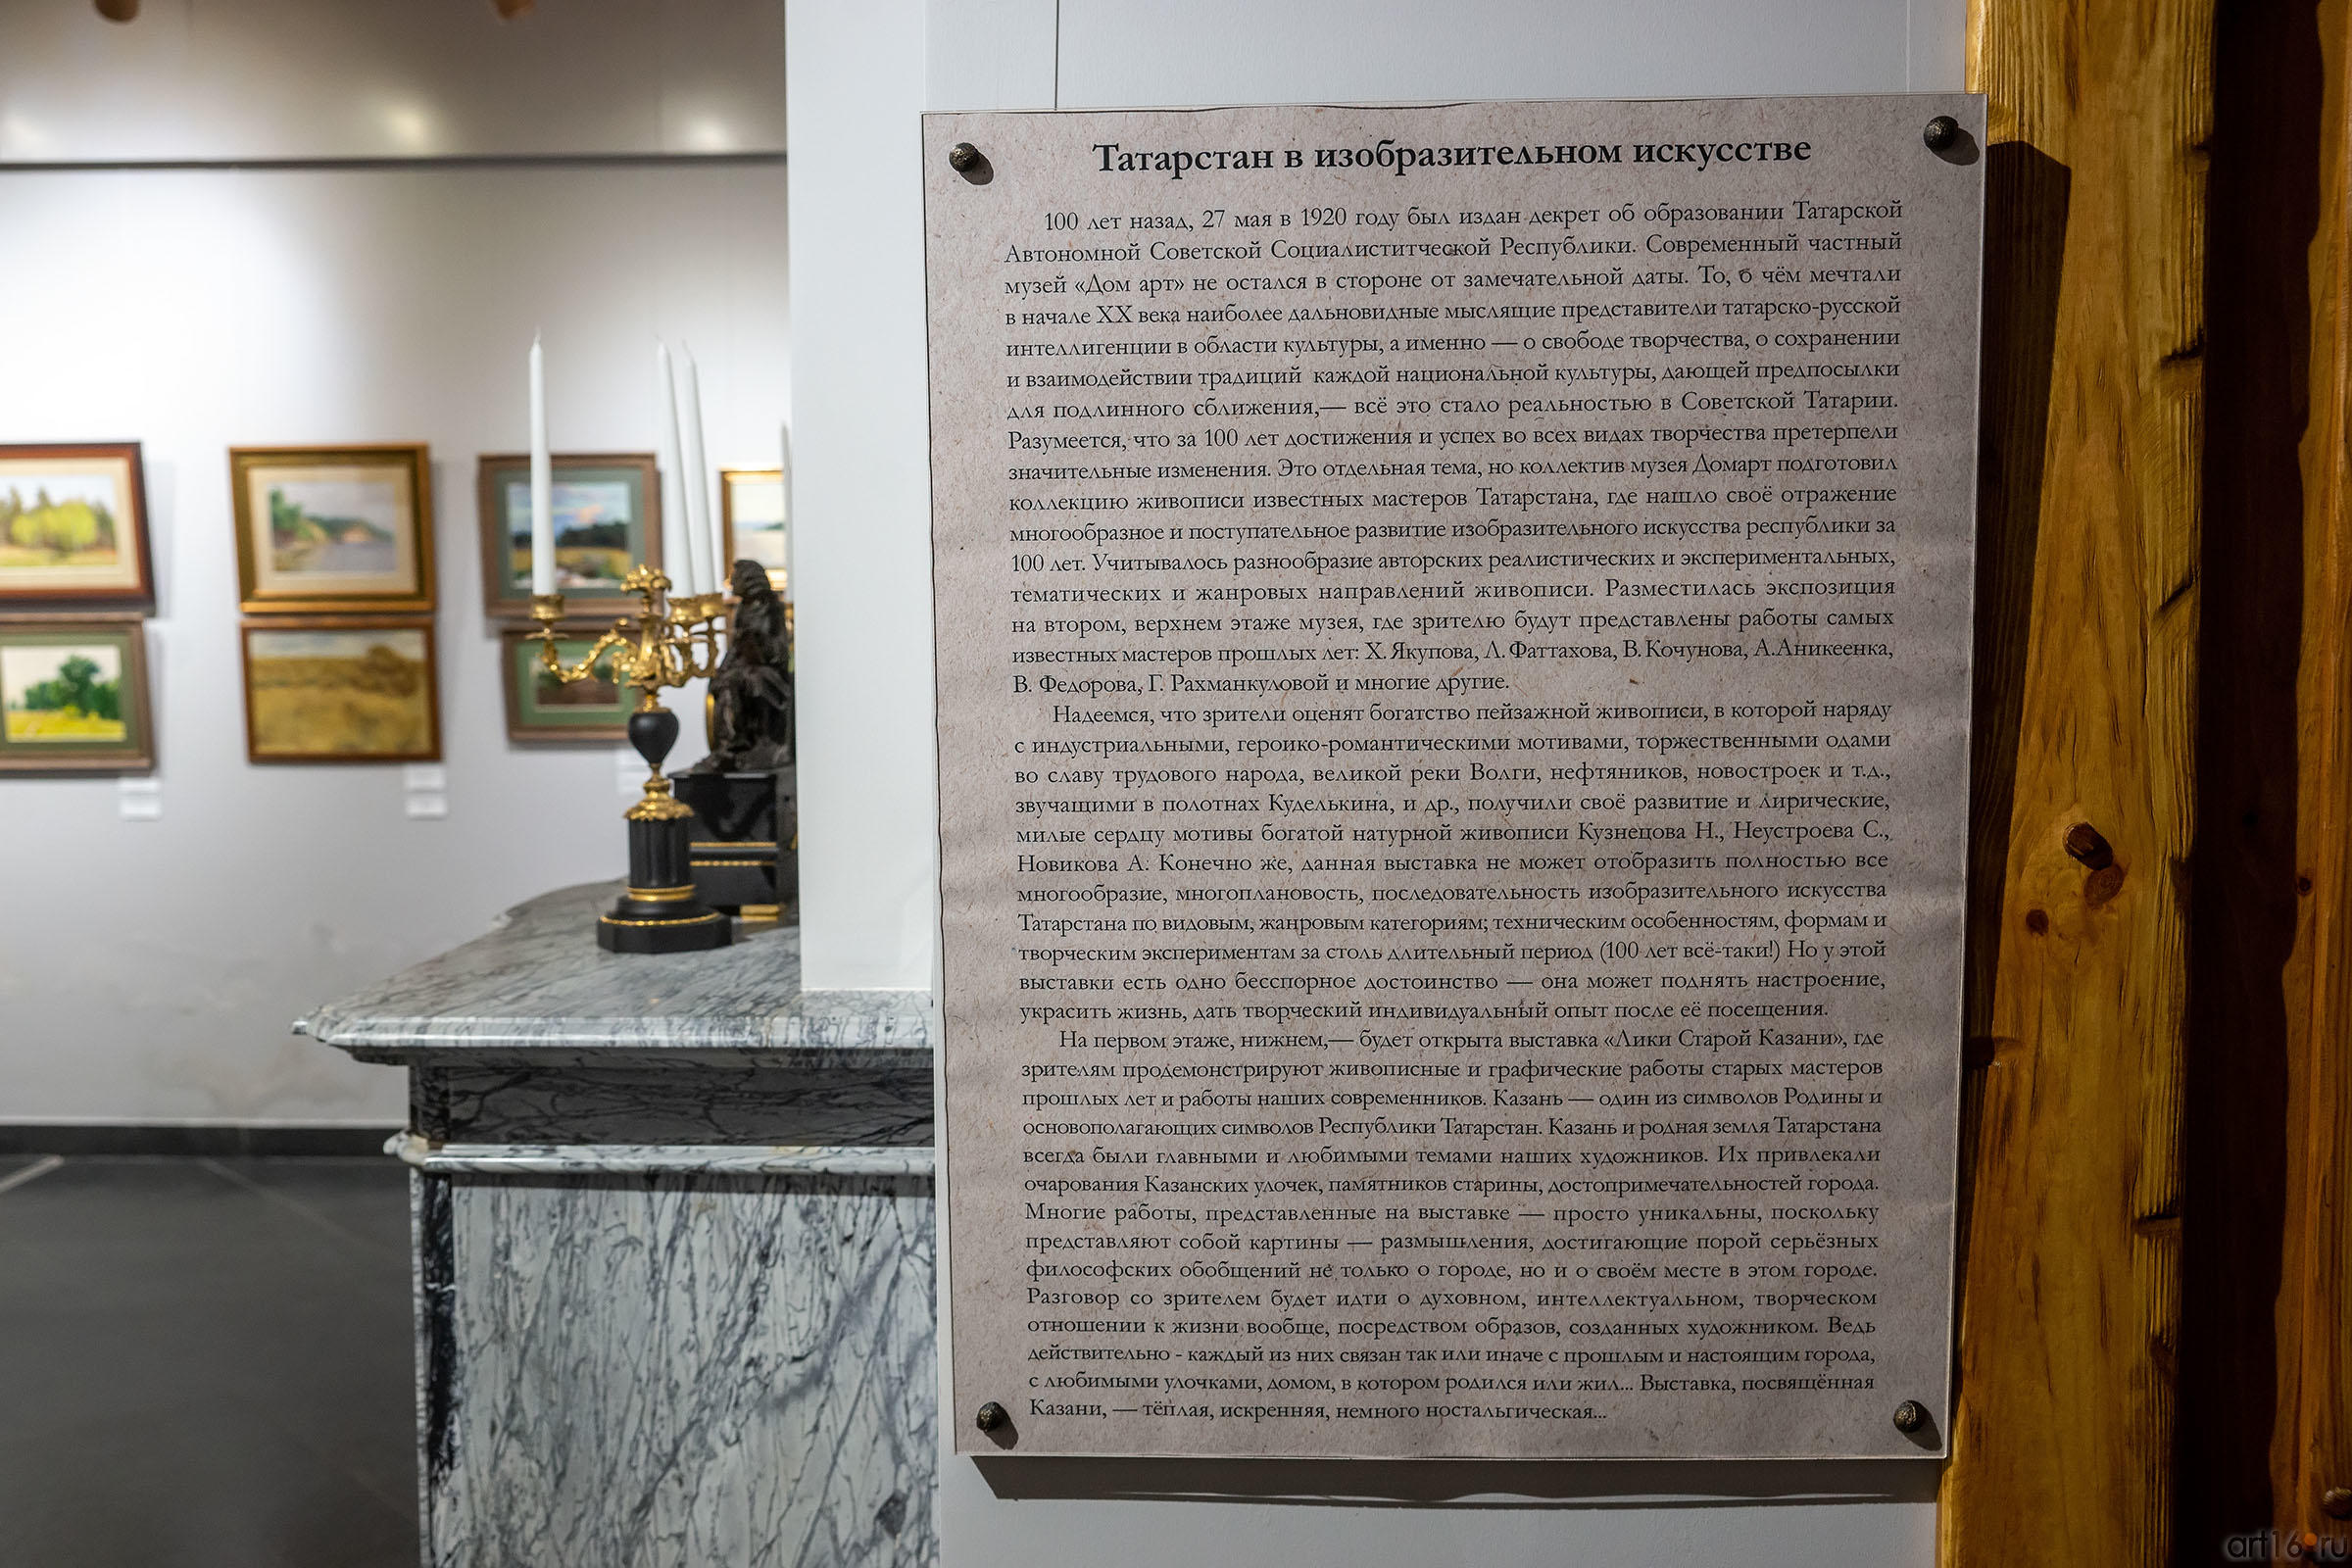 Фрагмент экспозиции выставки к 100-летию ТАССР::Выставка к 100-летию ТАССР